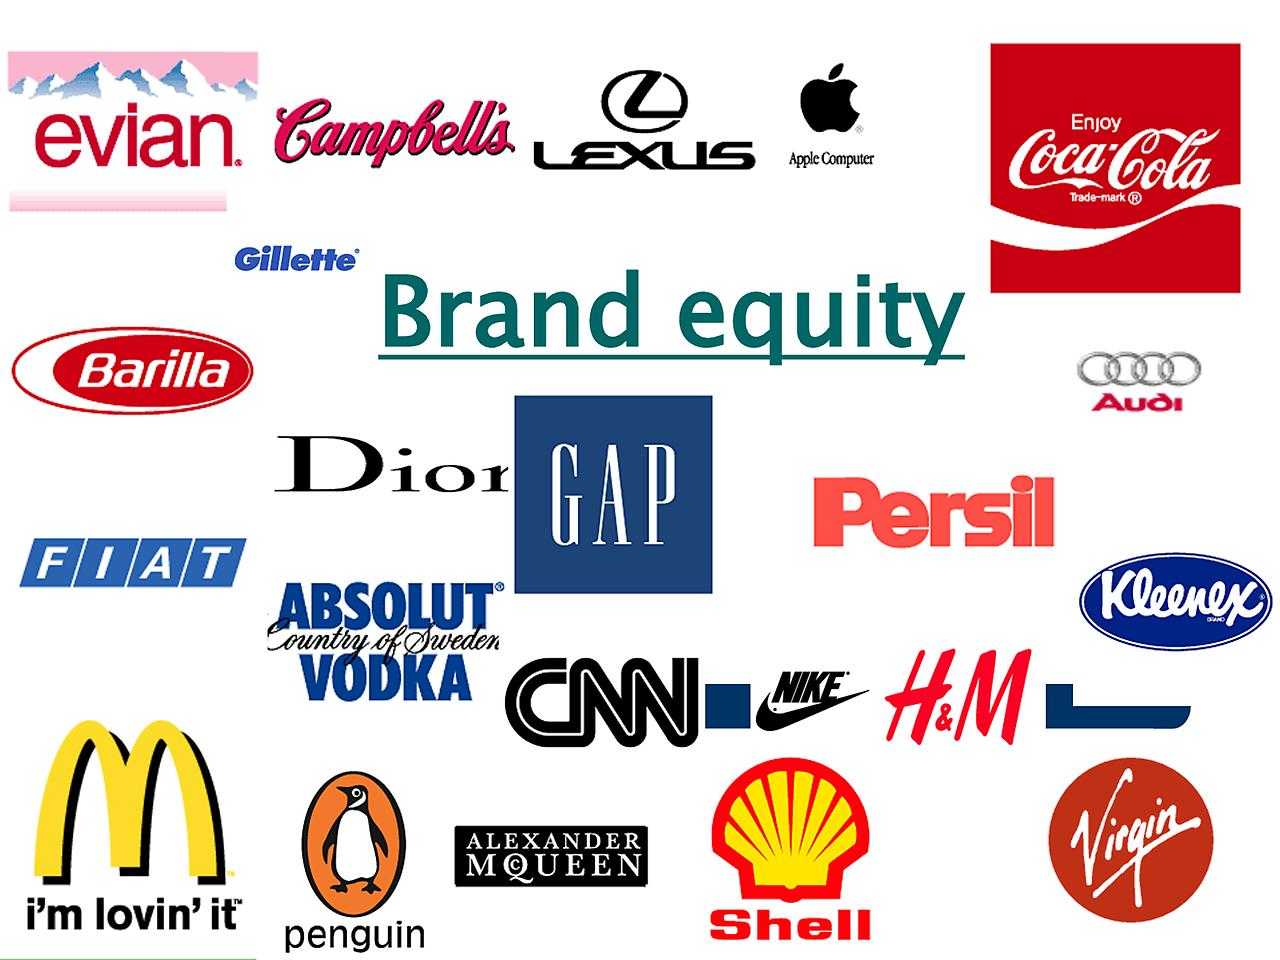 Название компаний придуманные слова. Названия брендов. Логотипы известных компаний. Разные бренды. Известные торговые марки.